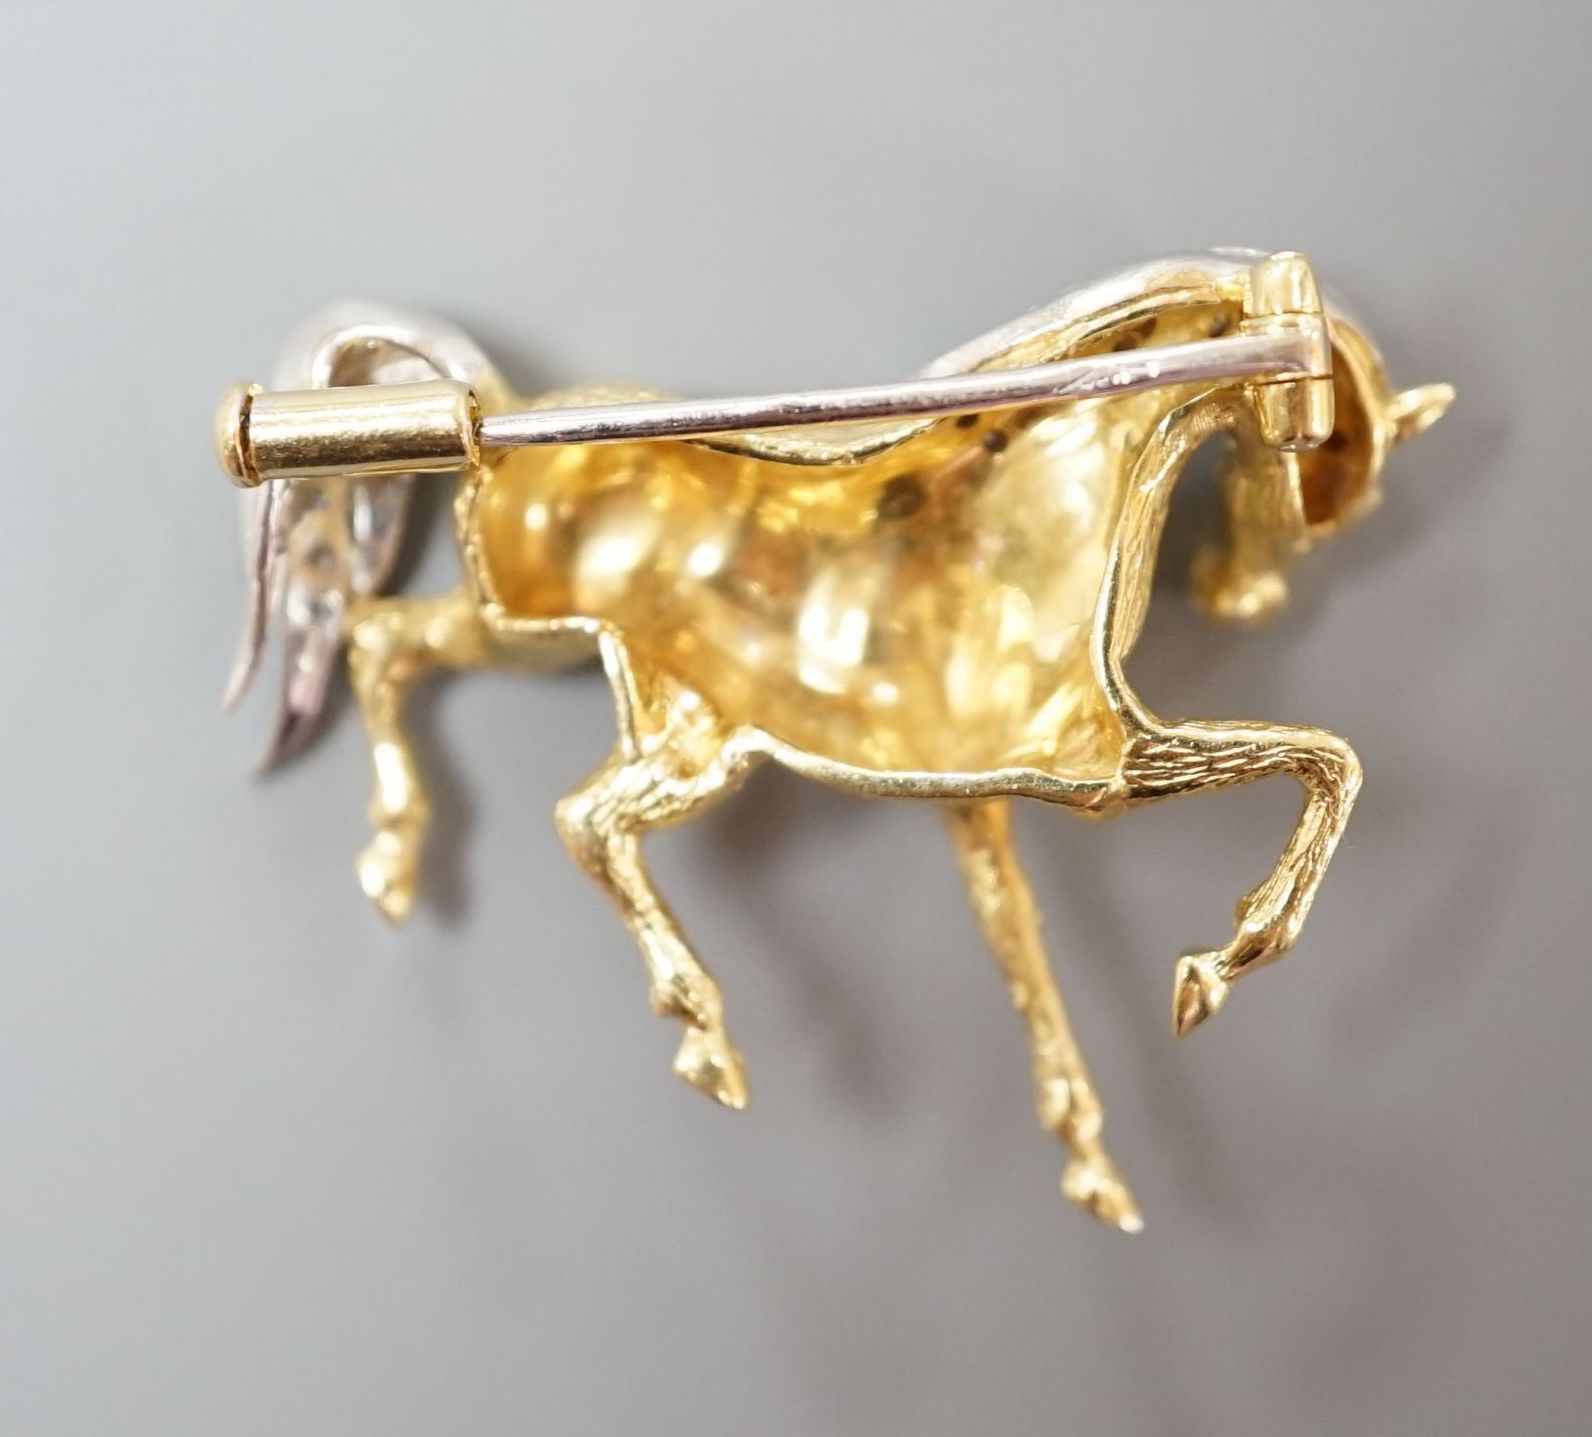 A modern 18ct gold and diamond chip set horse brooch, 29mm, gross weight 7.4 grams.